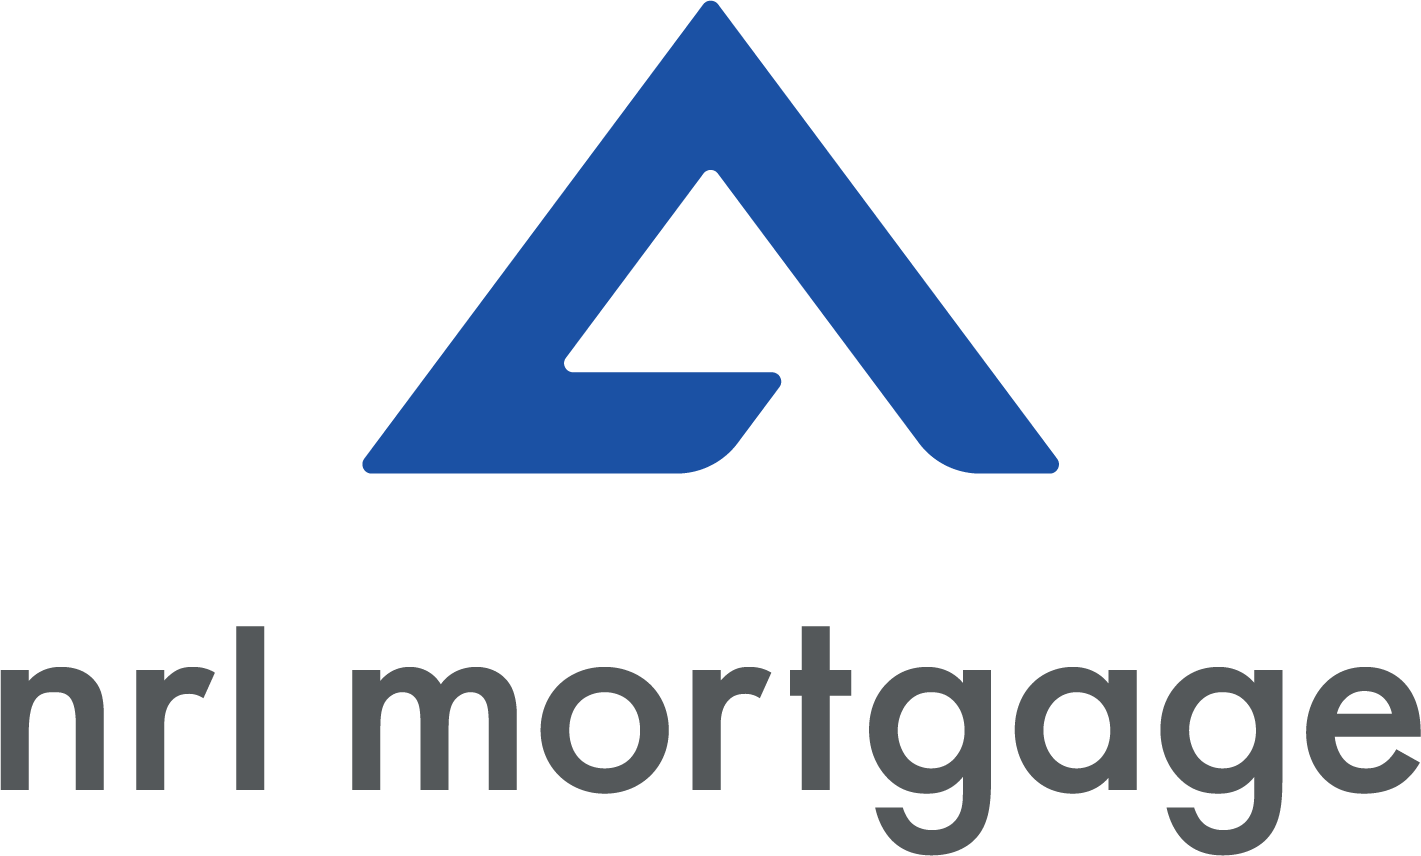 NRL Mortgage logo